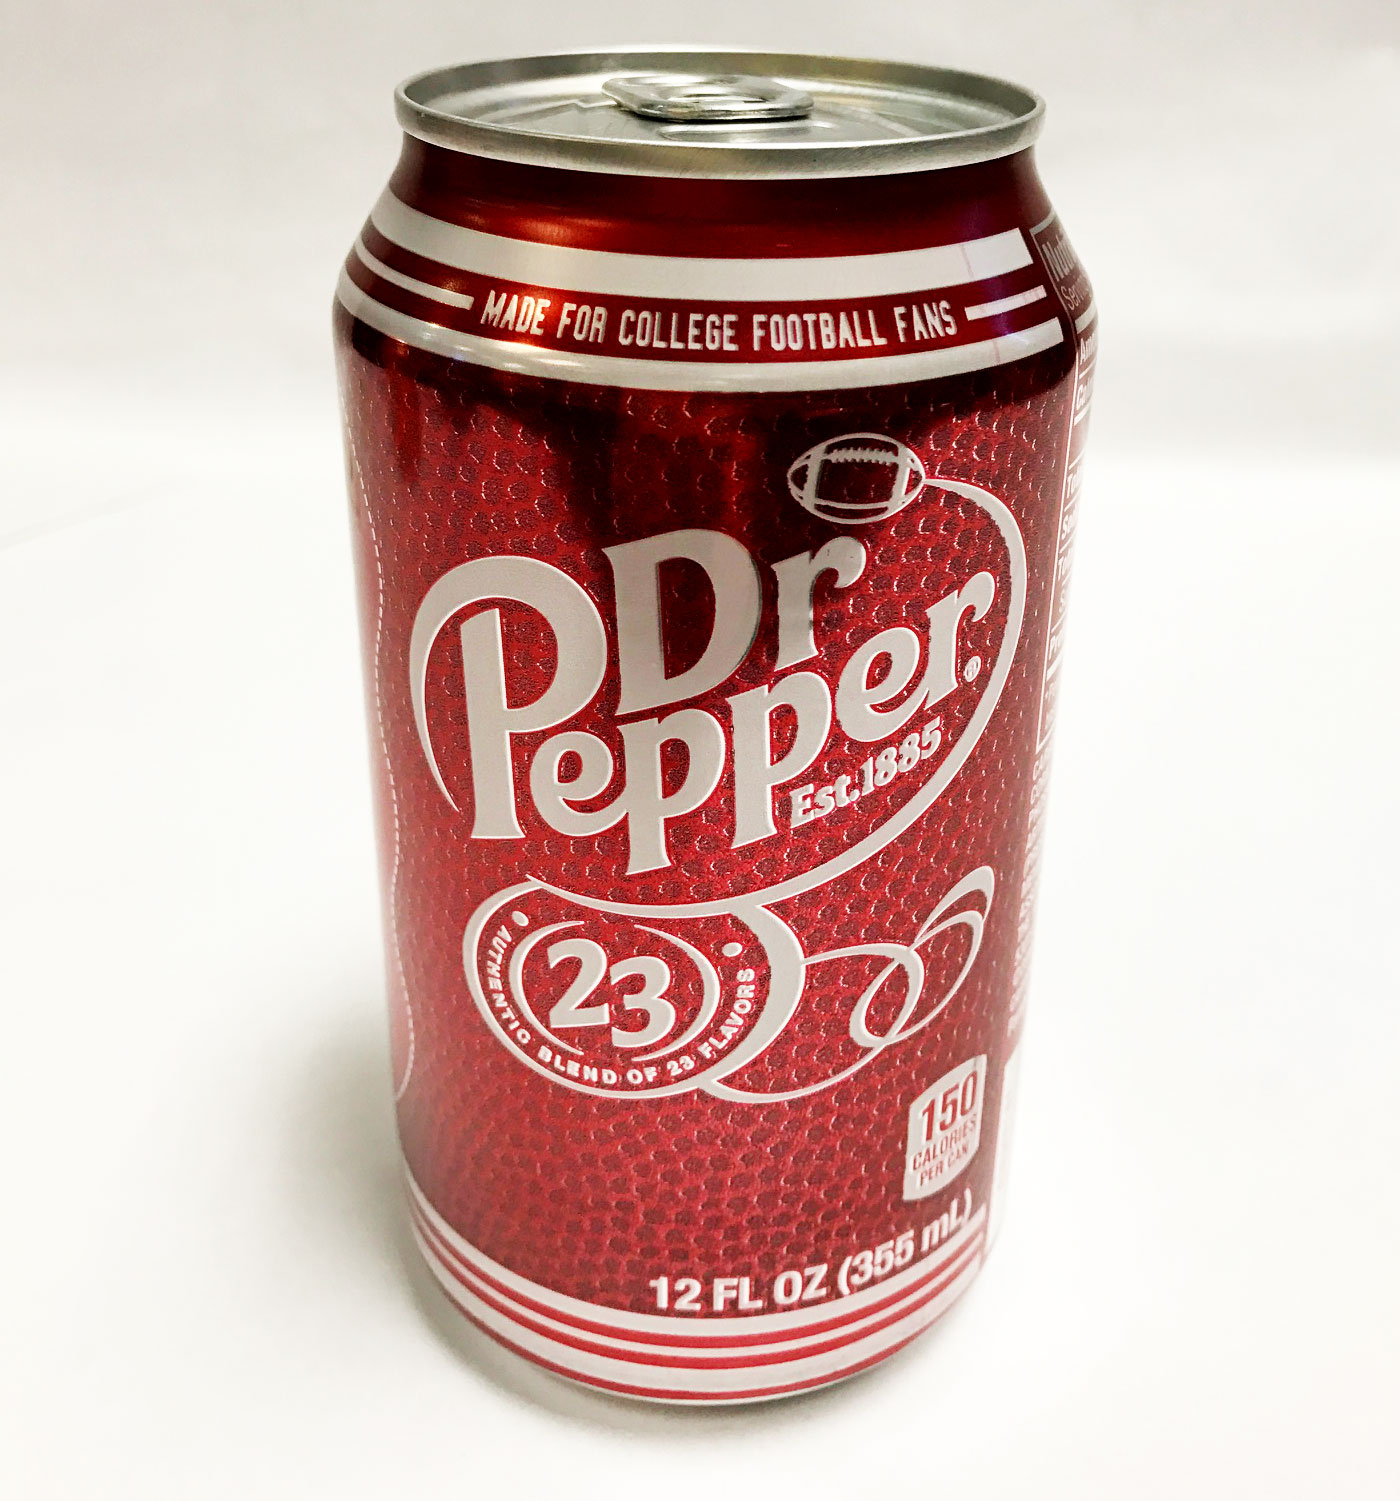 Pepper напиток. Доктор Пеппер. Пеппер Dr.Pepper. Мистер Пеппер напиток. Газировка Мистер Пеппер.